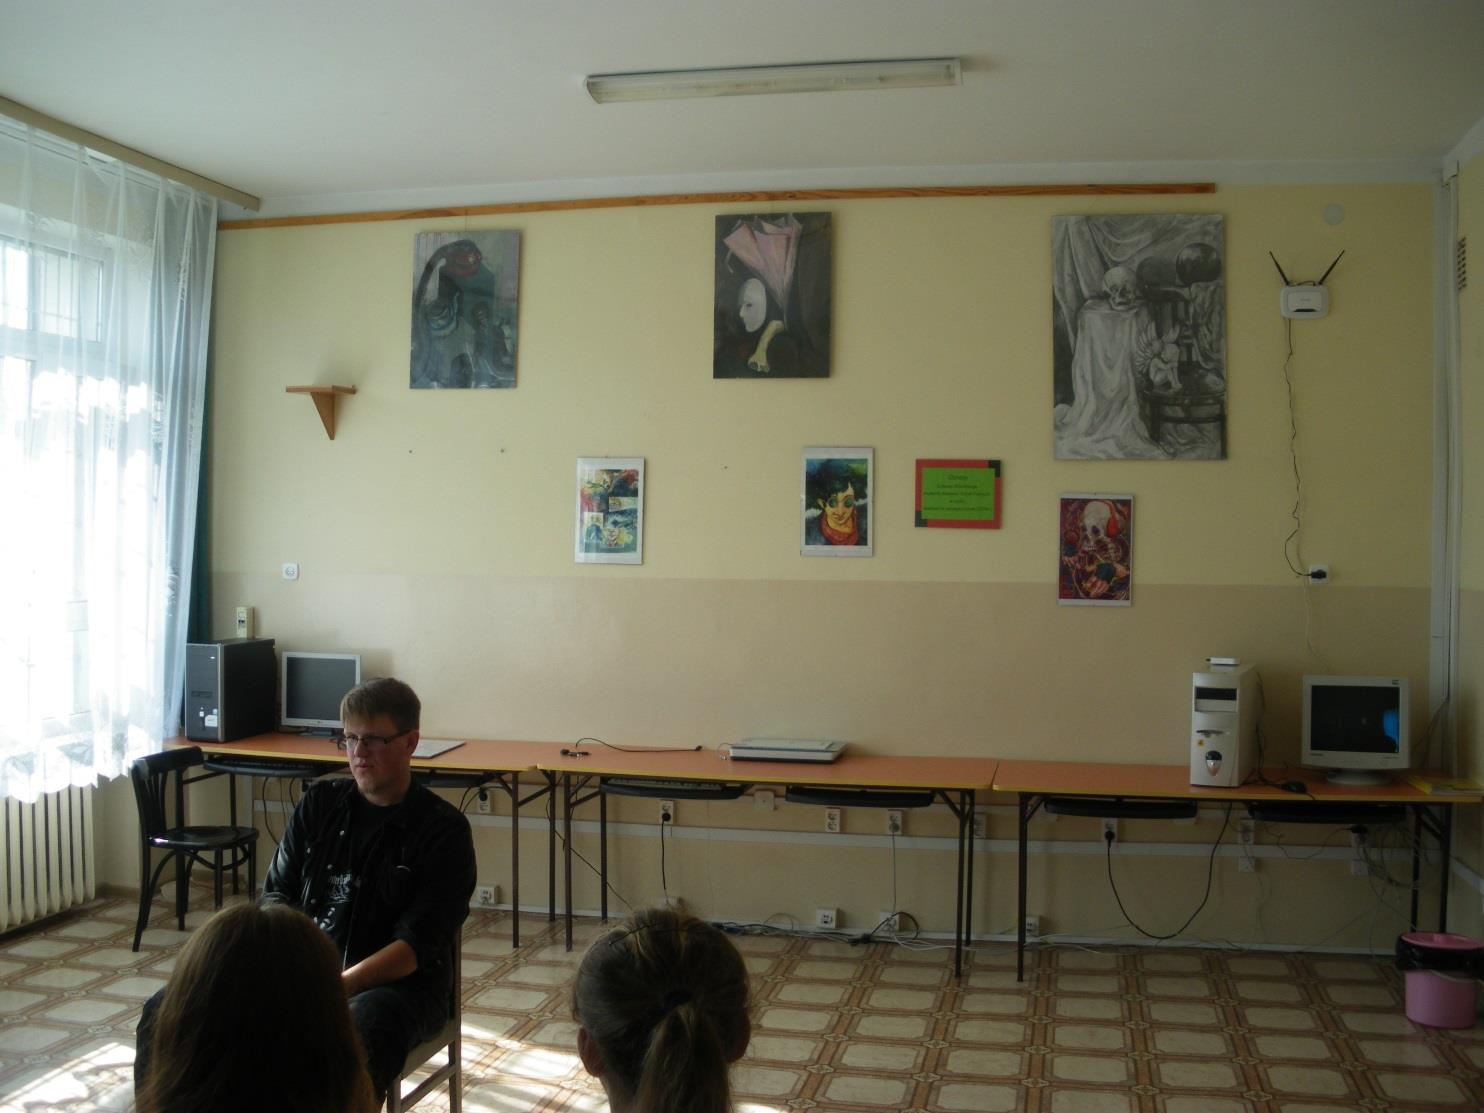 Spotkanie z Łukaszem Milewskim 29 września w bibliotece szkolnej, w ramach spotkań z lokalnymi twórcami, gościliśmy Łukasza Milewskiego, studenta ASP w Łodzi.